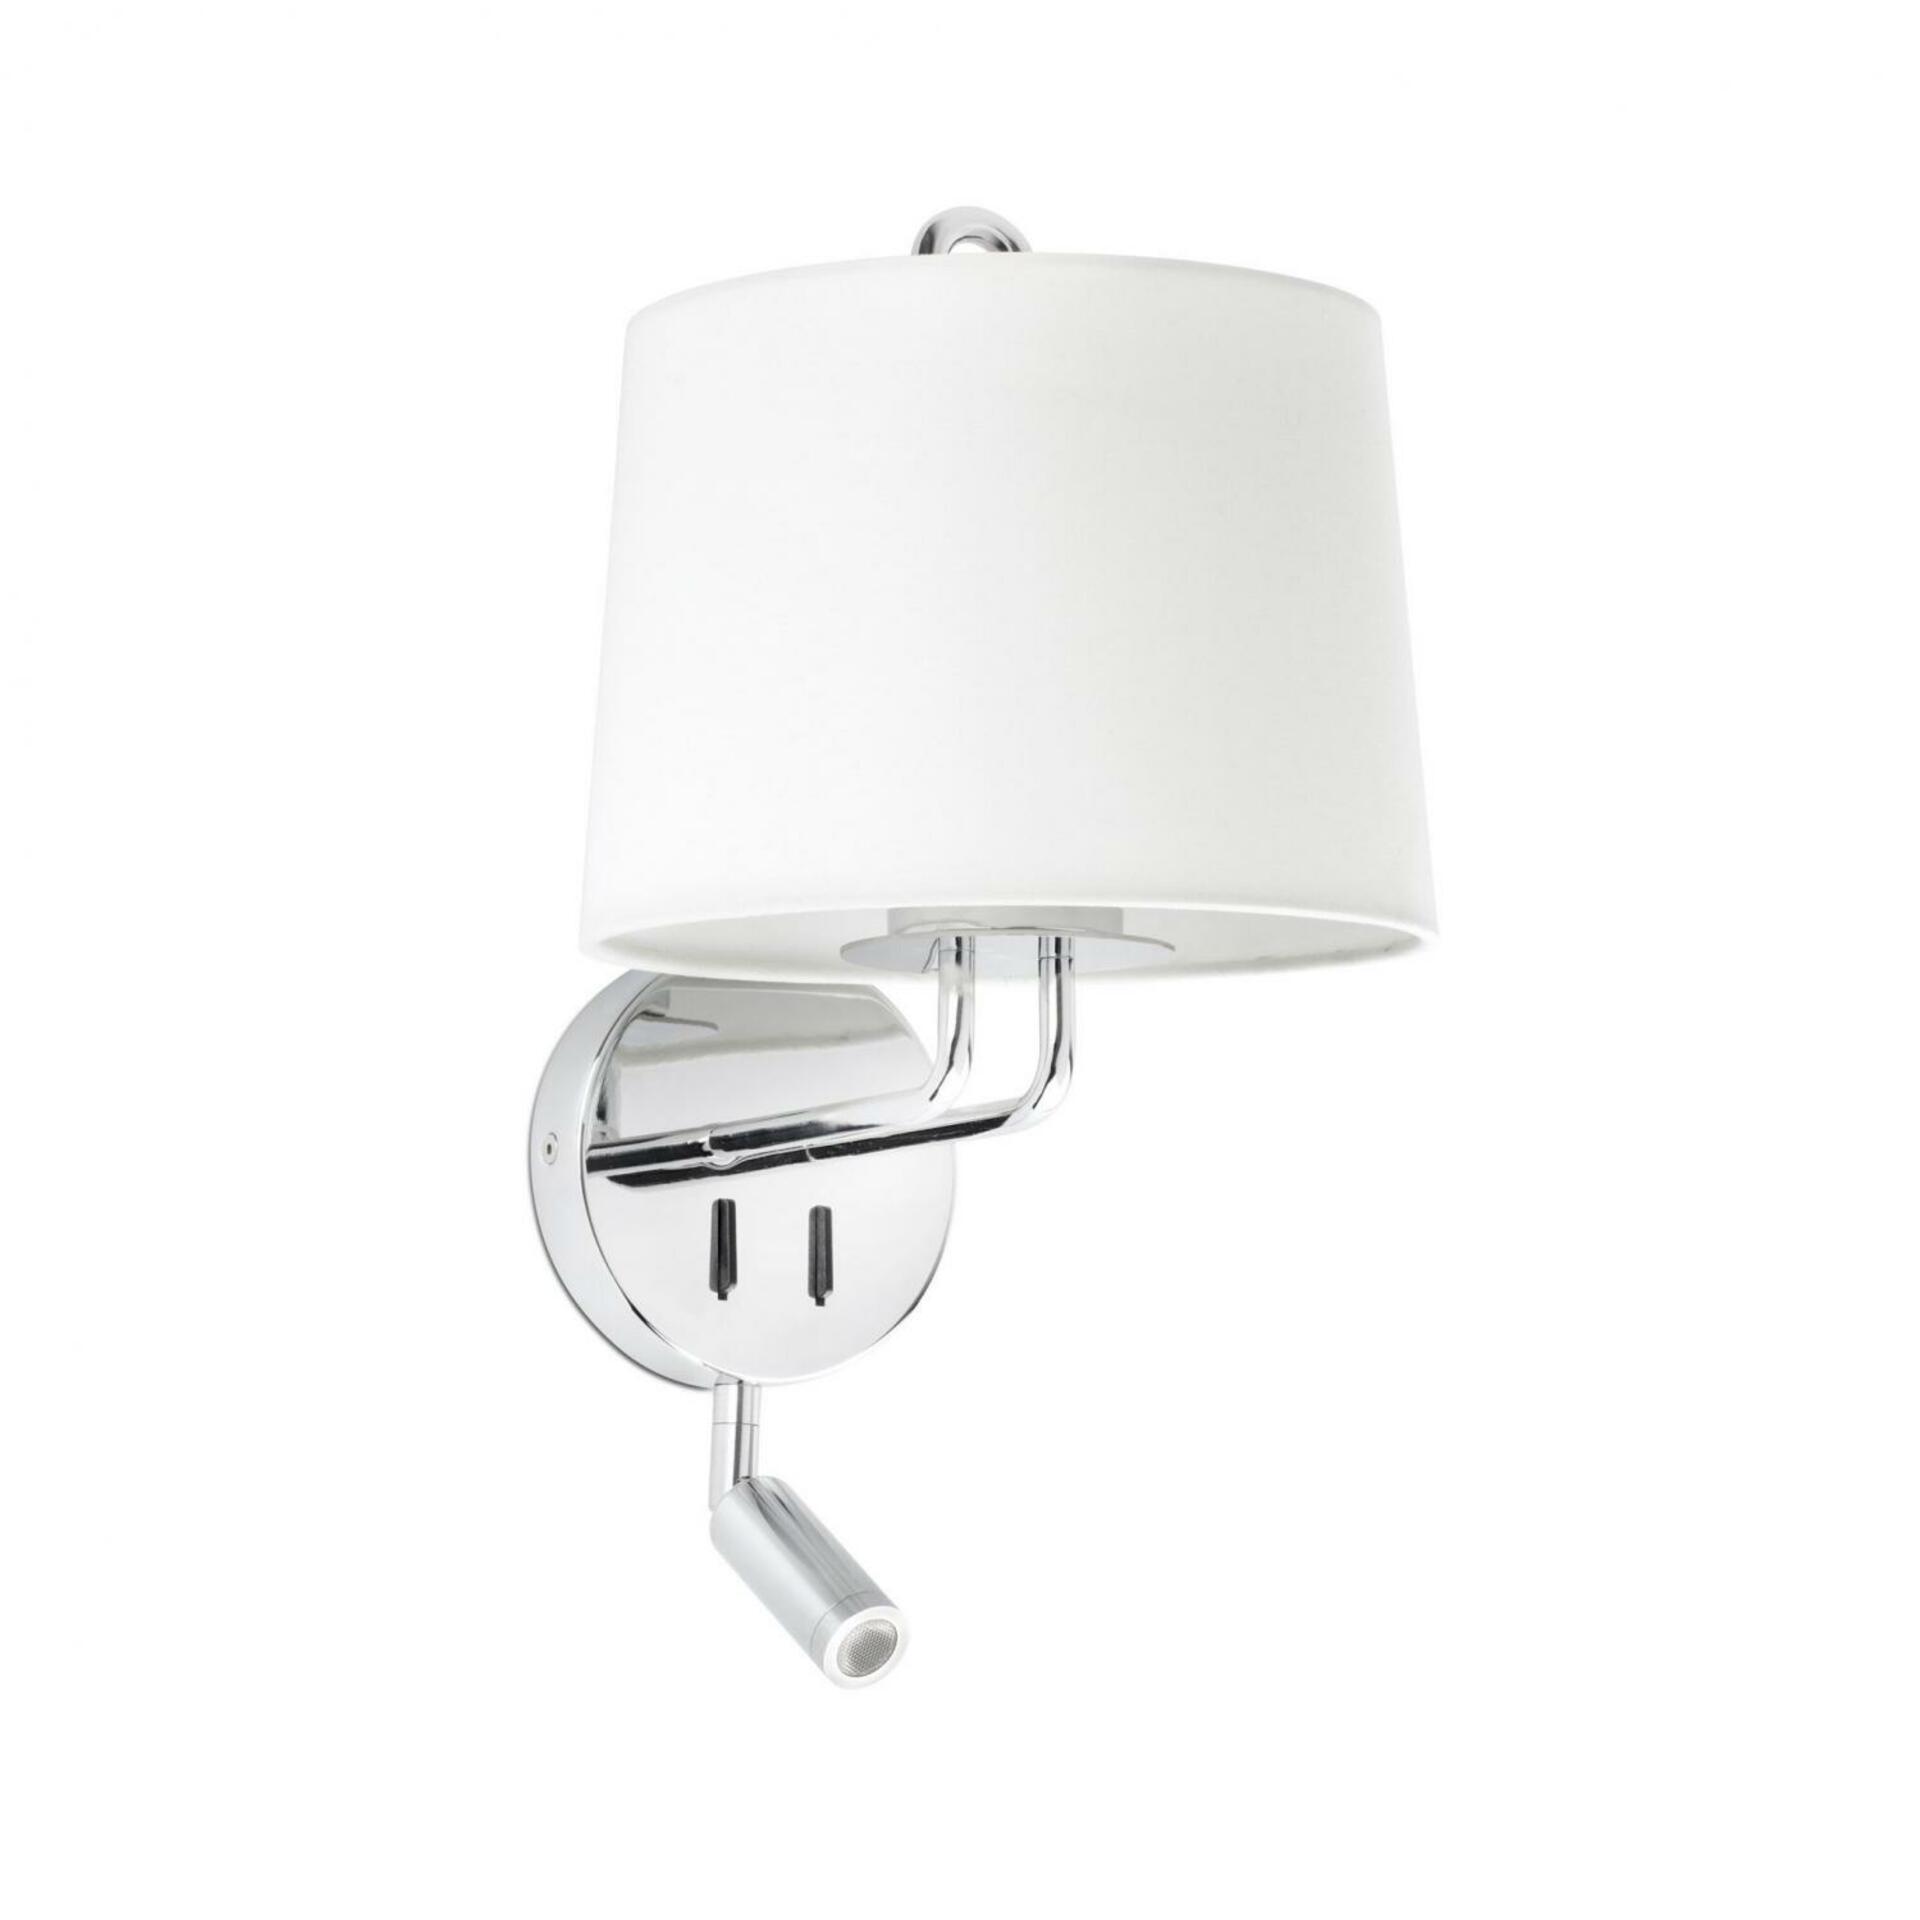 FARO MONTREAL nástěnná lampa, chrom/bílá, se čtecí lampičkou